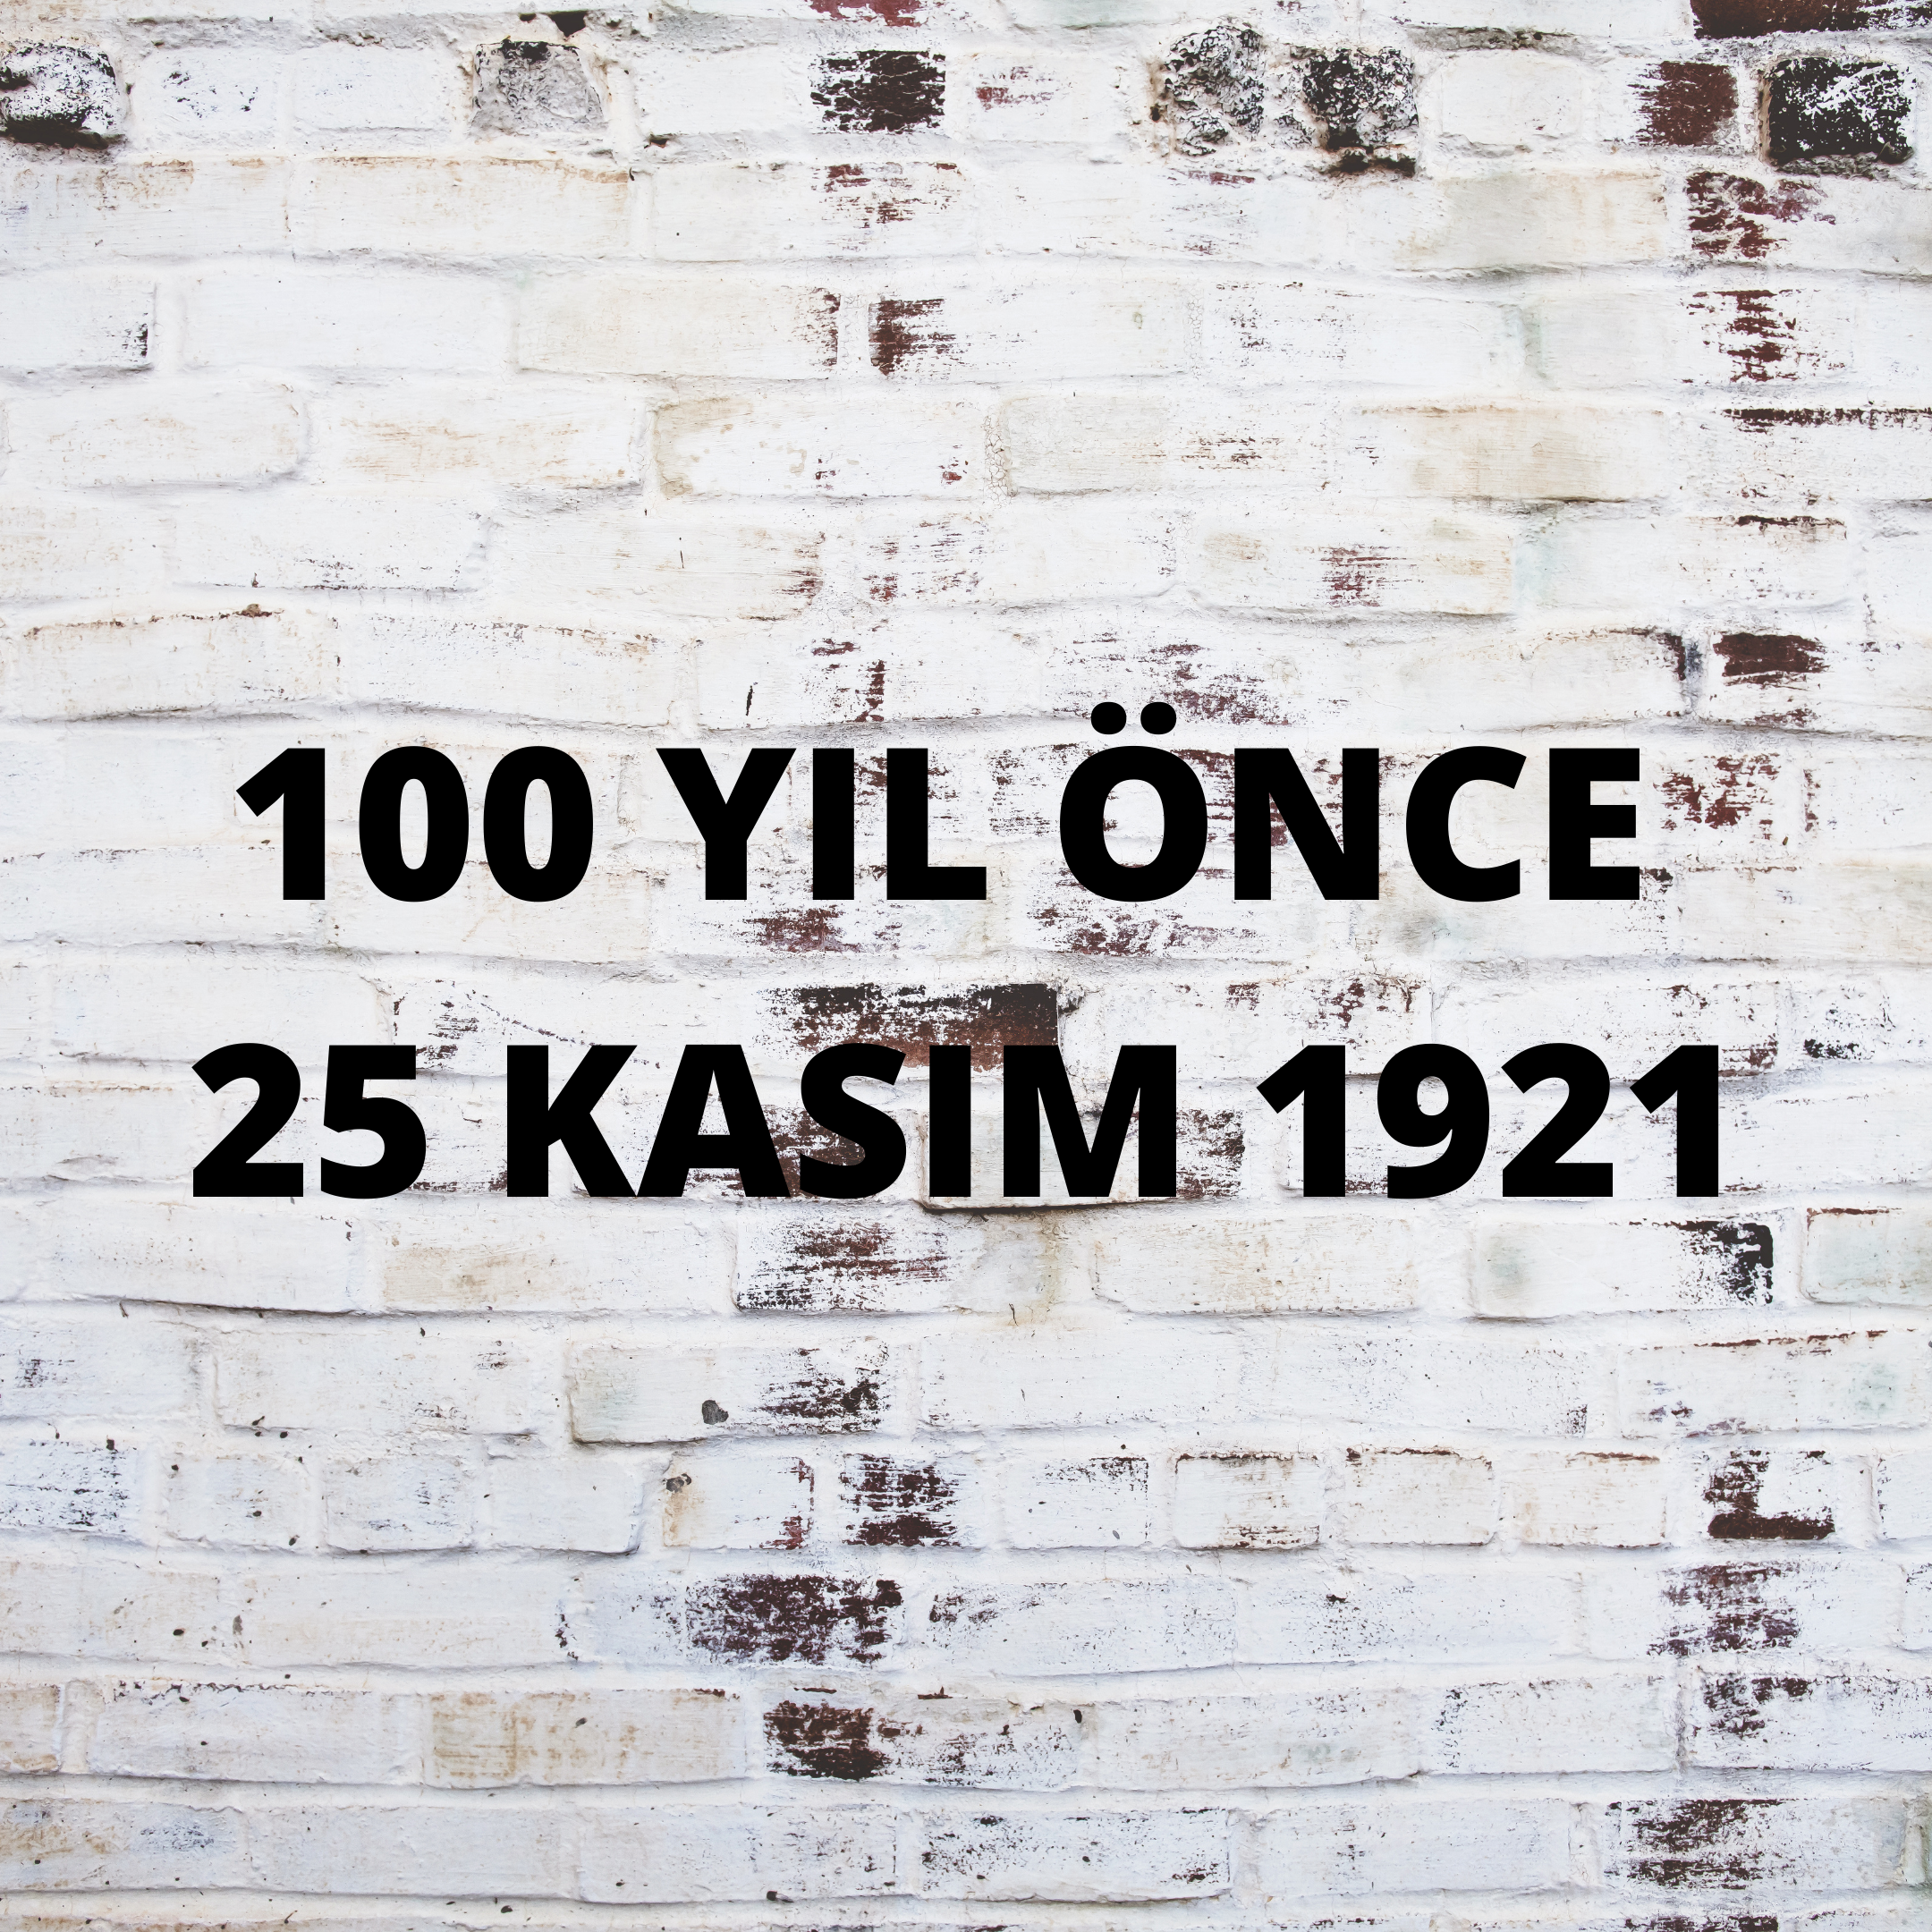 100 YIL ÖNCE 25 KASIM 1921